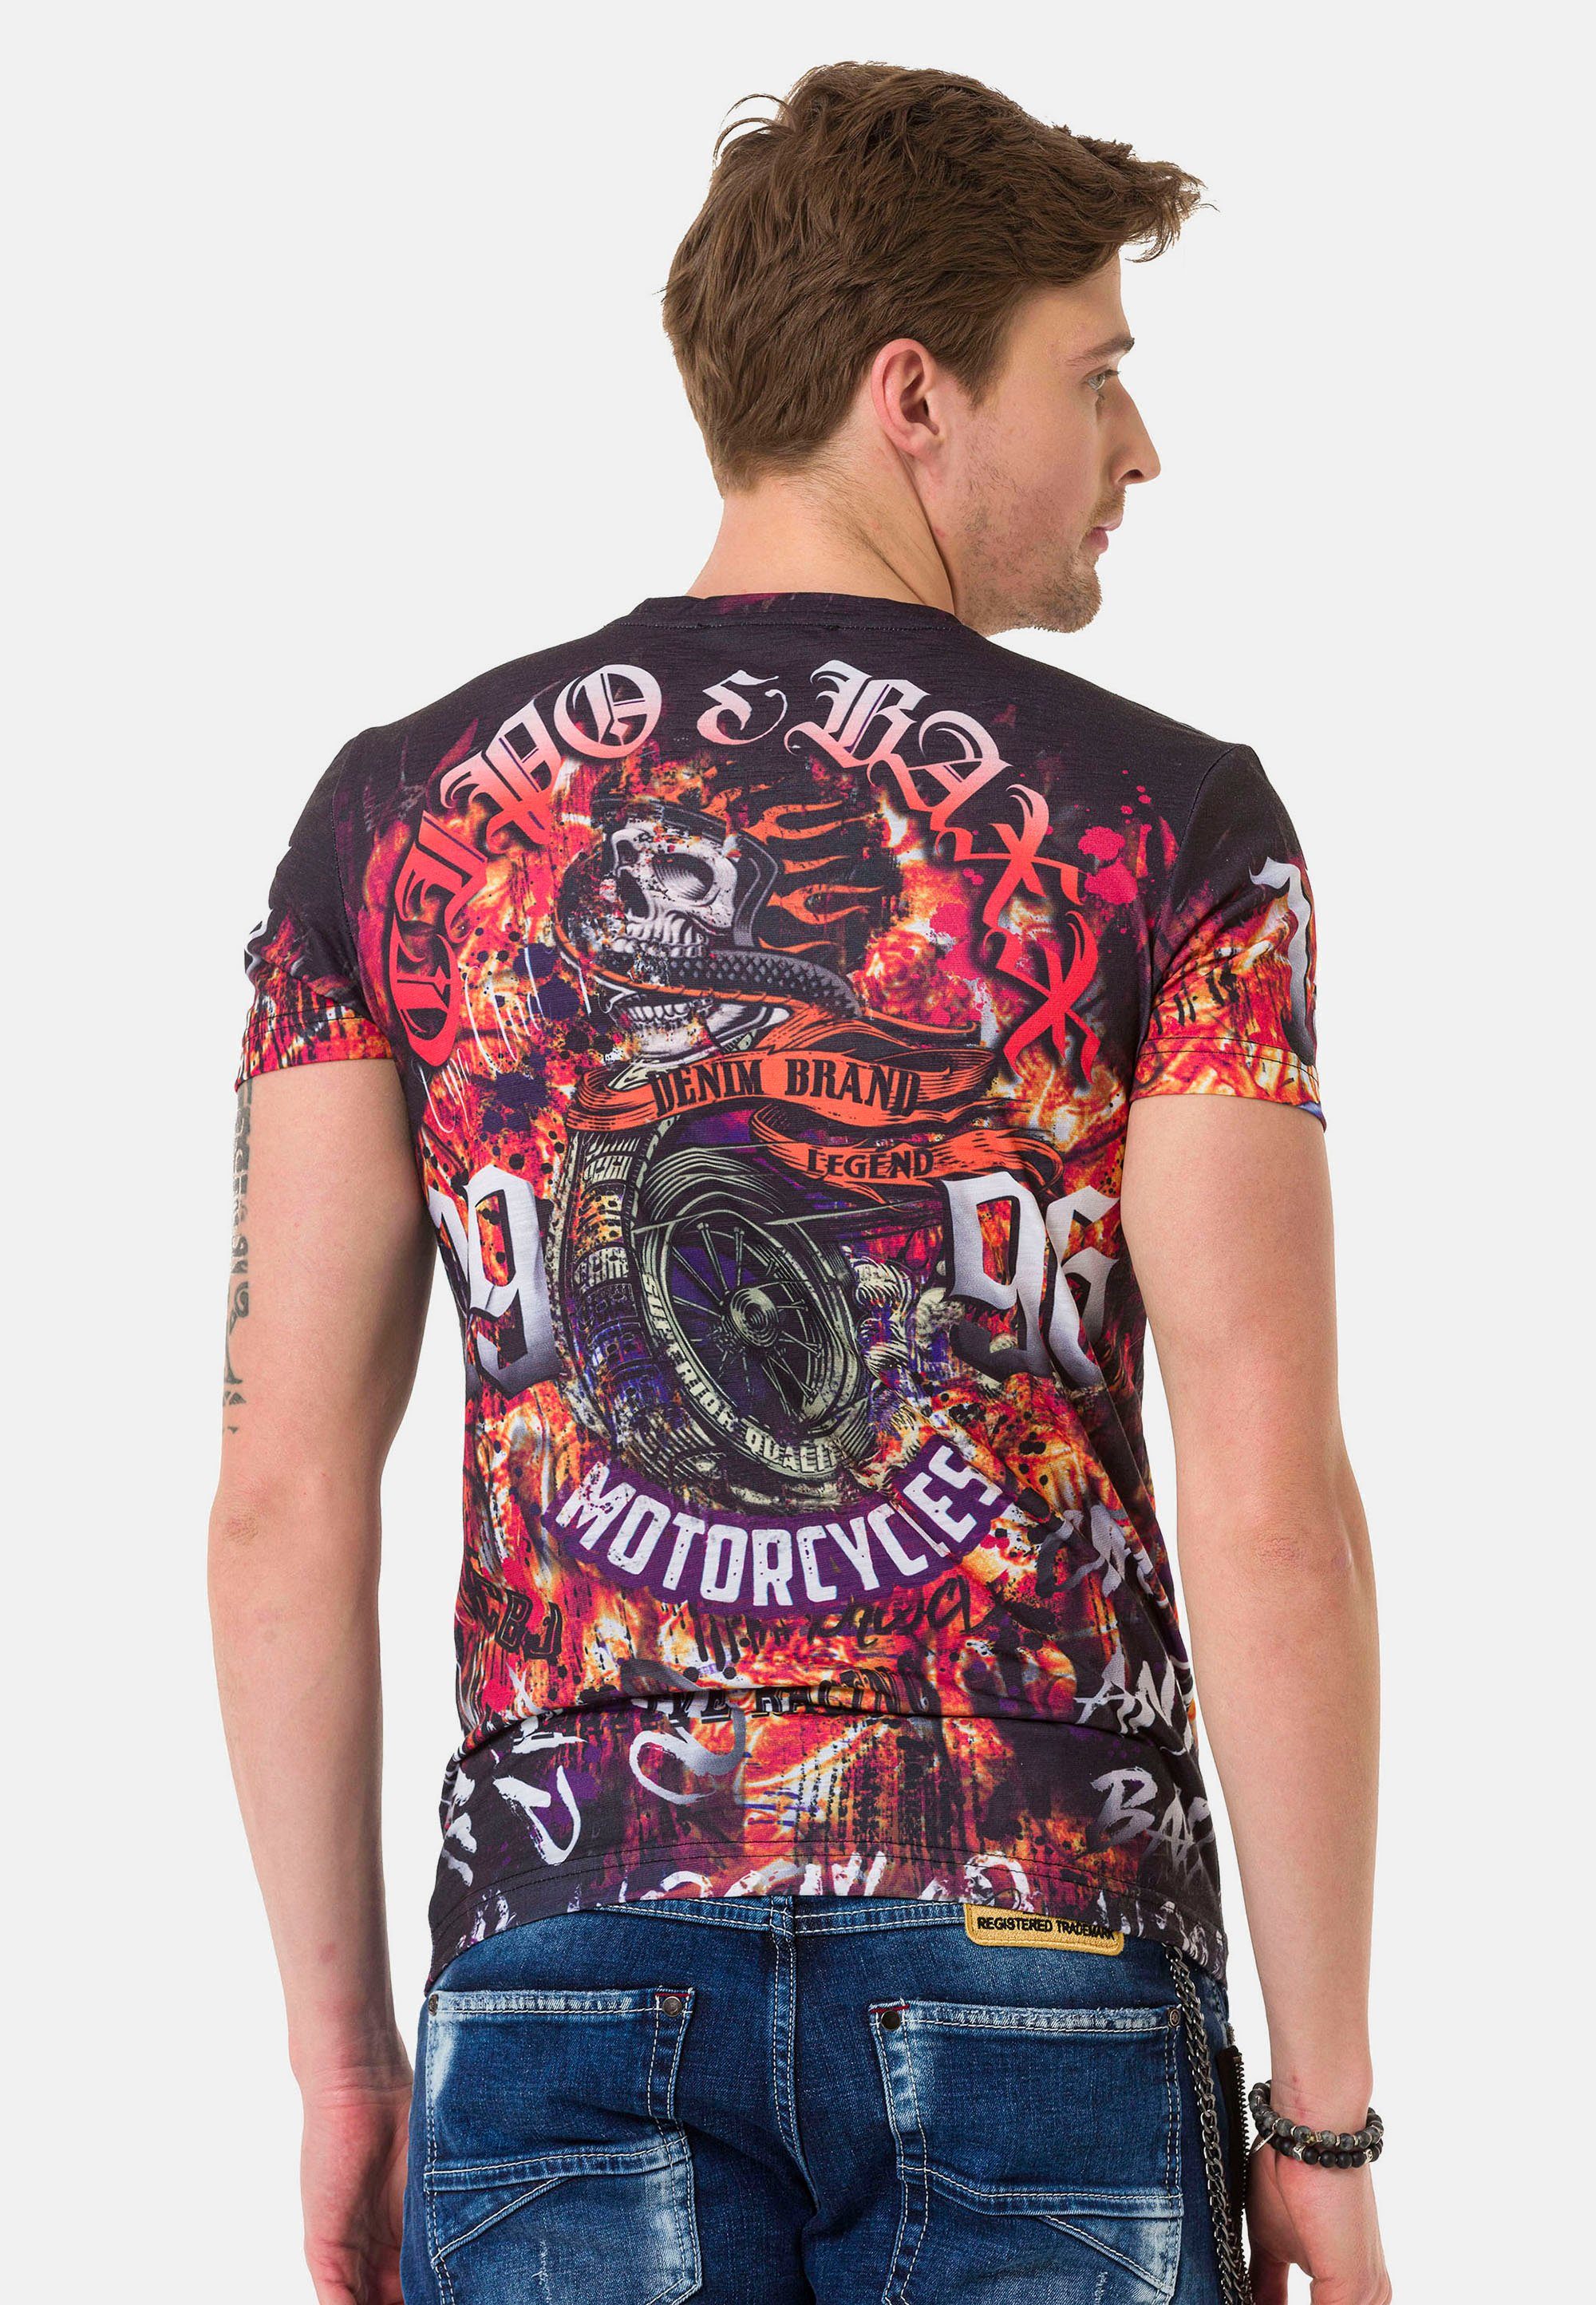 & Cipo Biker-Prints T-Shirt coolen Baxx mit